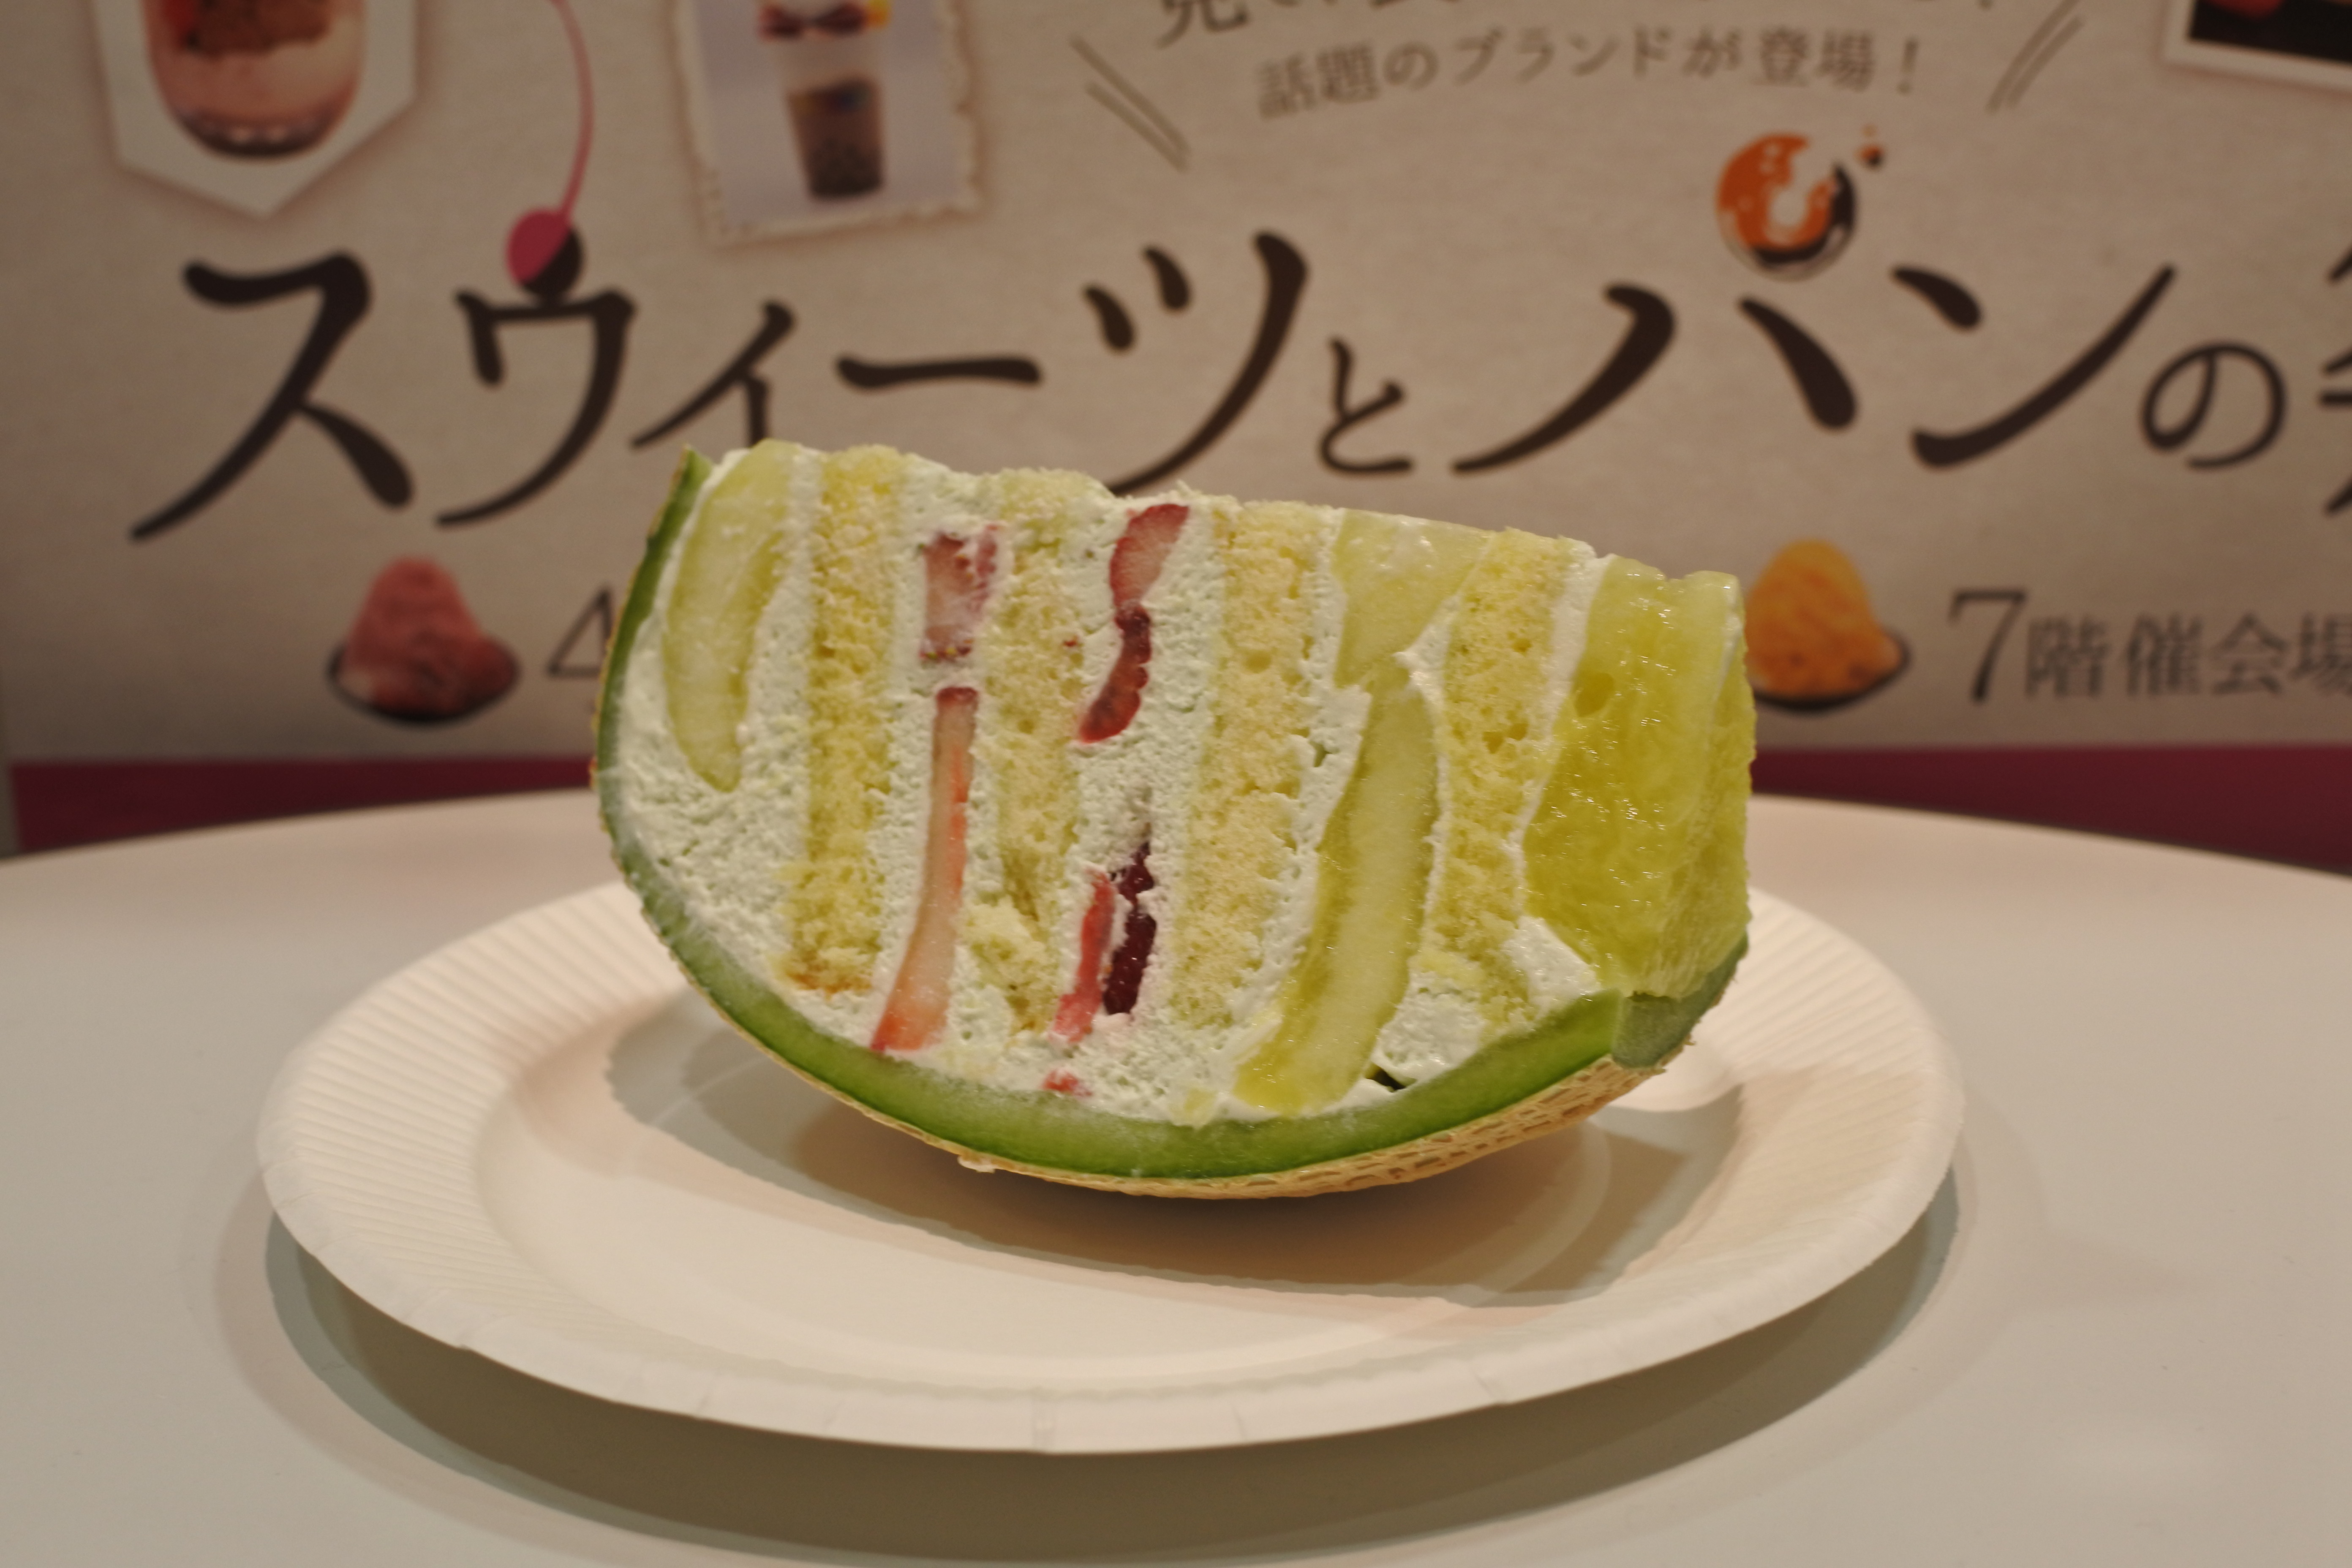 大阪高島屋 高島屋の催事でメロンまるごとの高級ケーキをお得に楽しみましょう Tsukiichi 自己中心食日記 Powered By ライブドアブログ